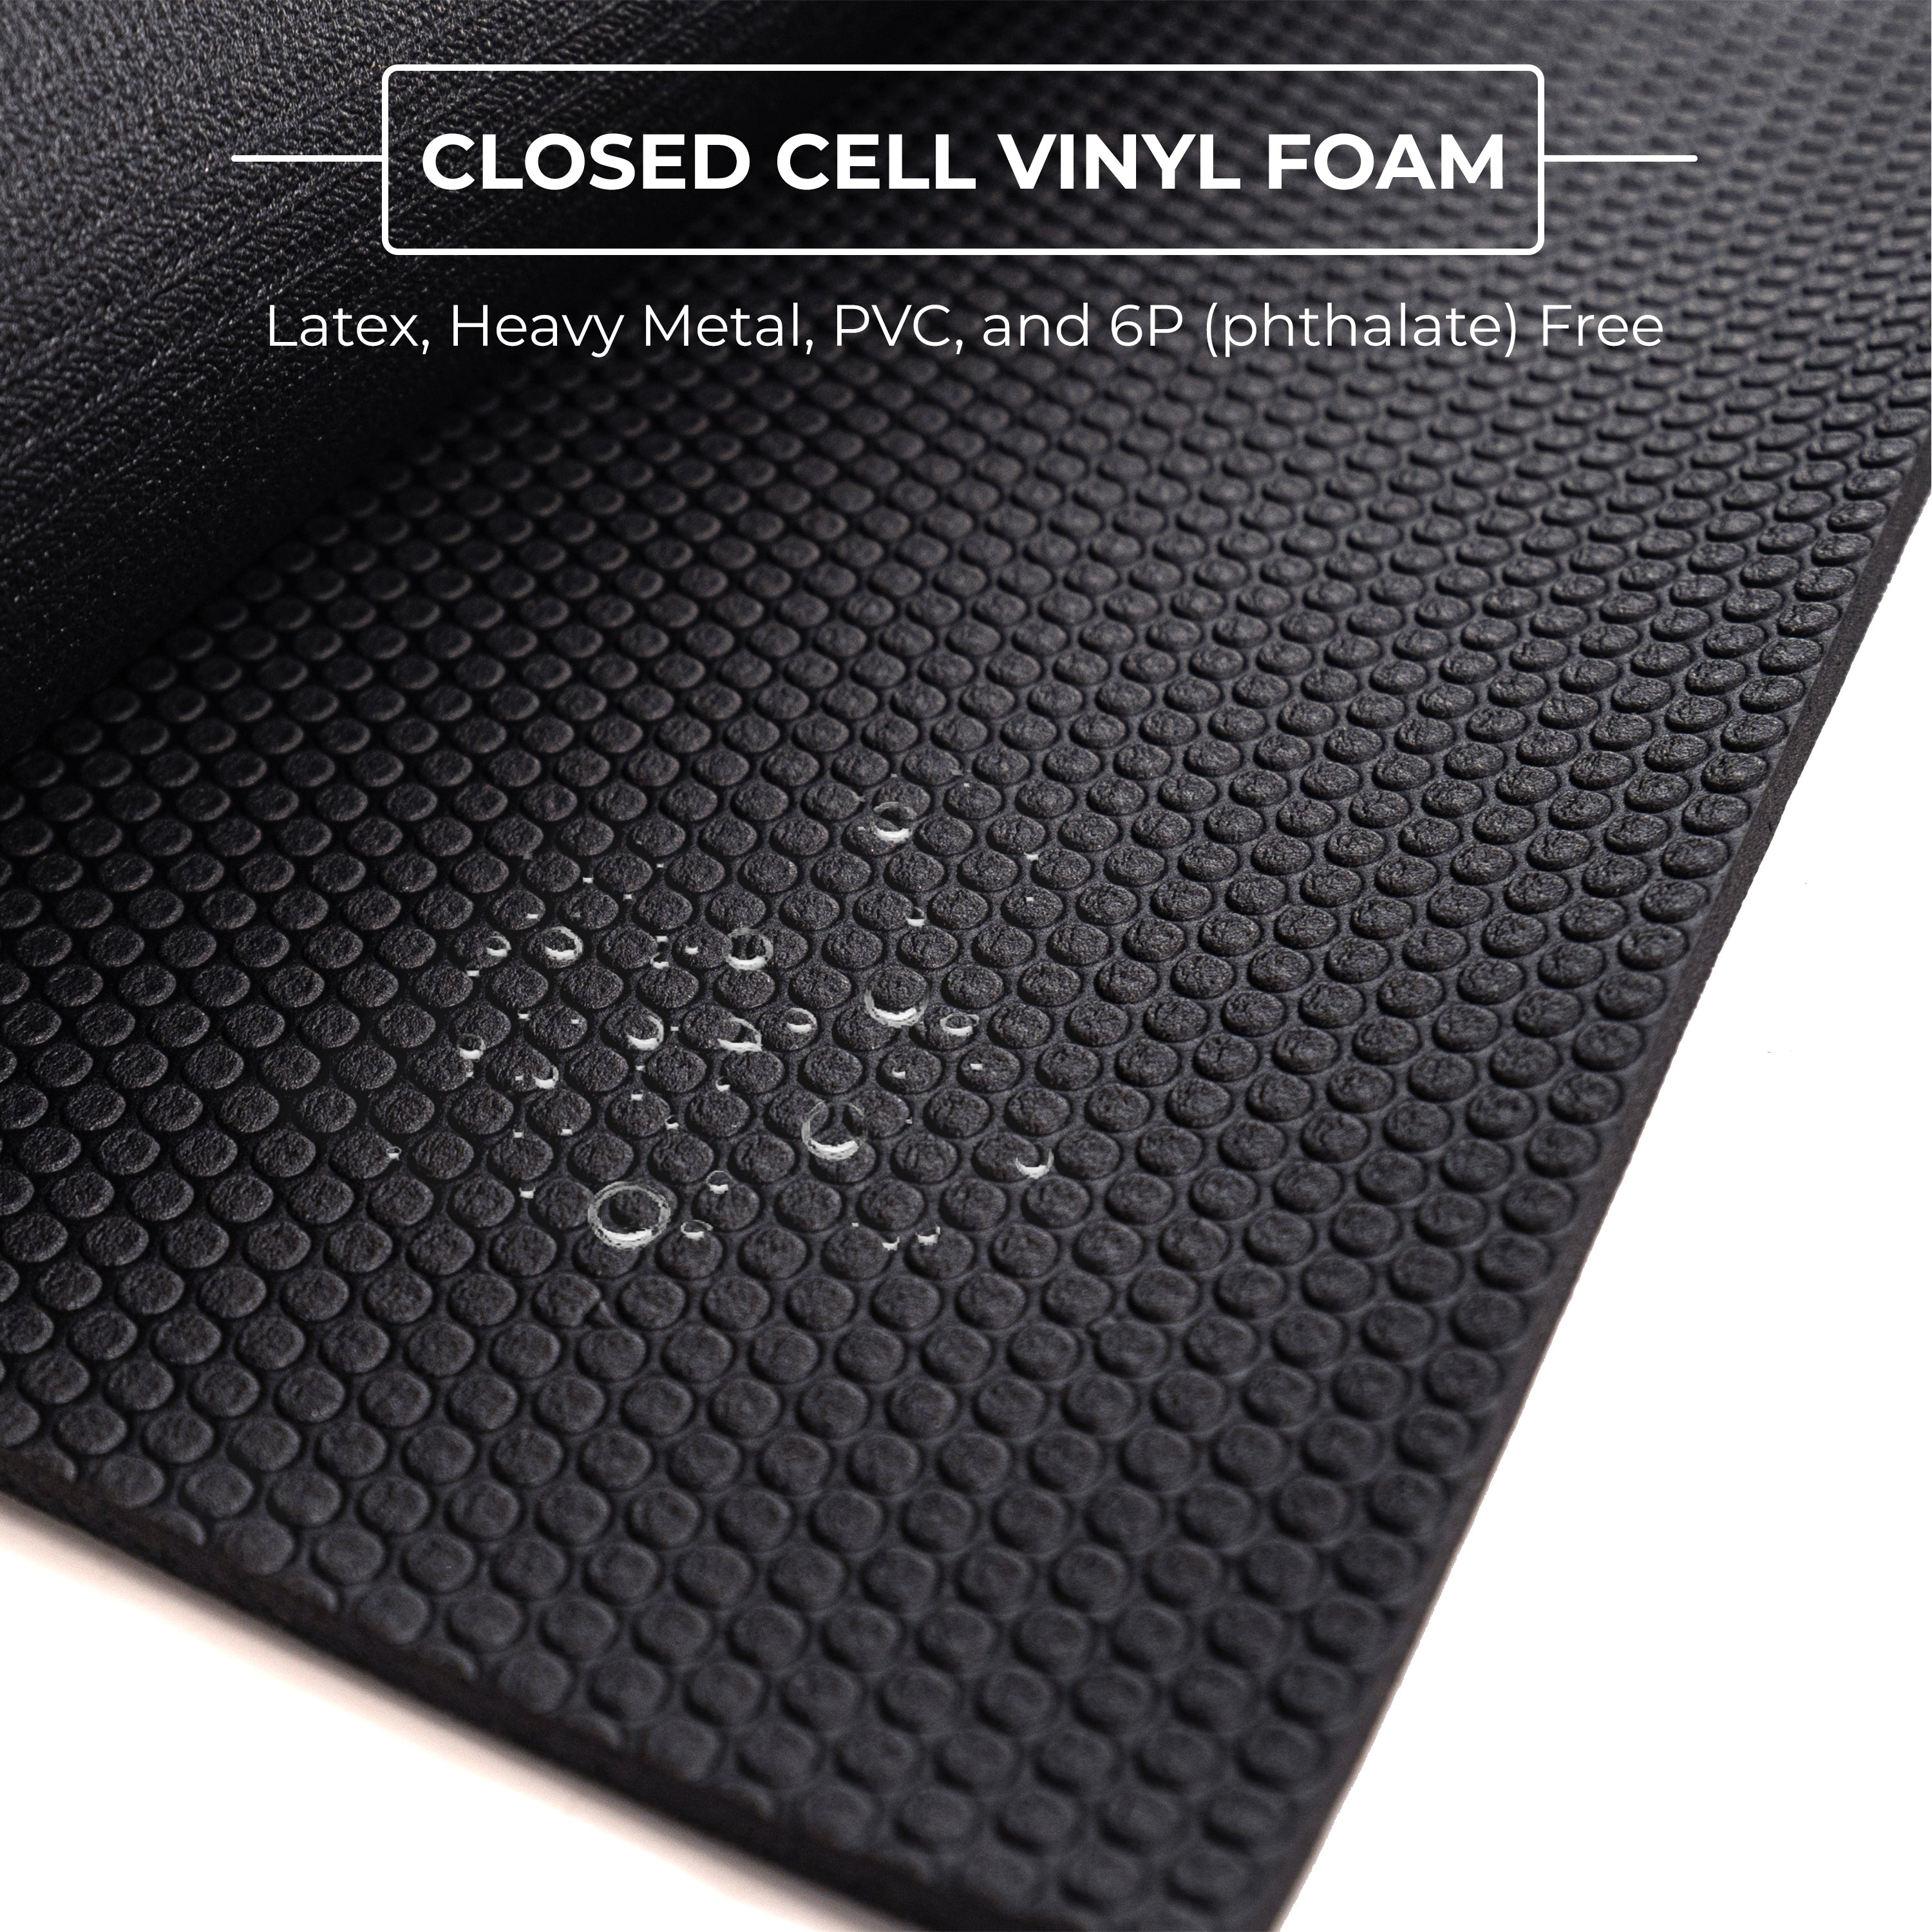 closed cell vinyl foam material yoga mat